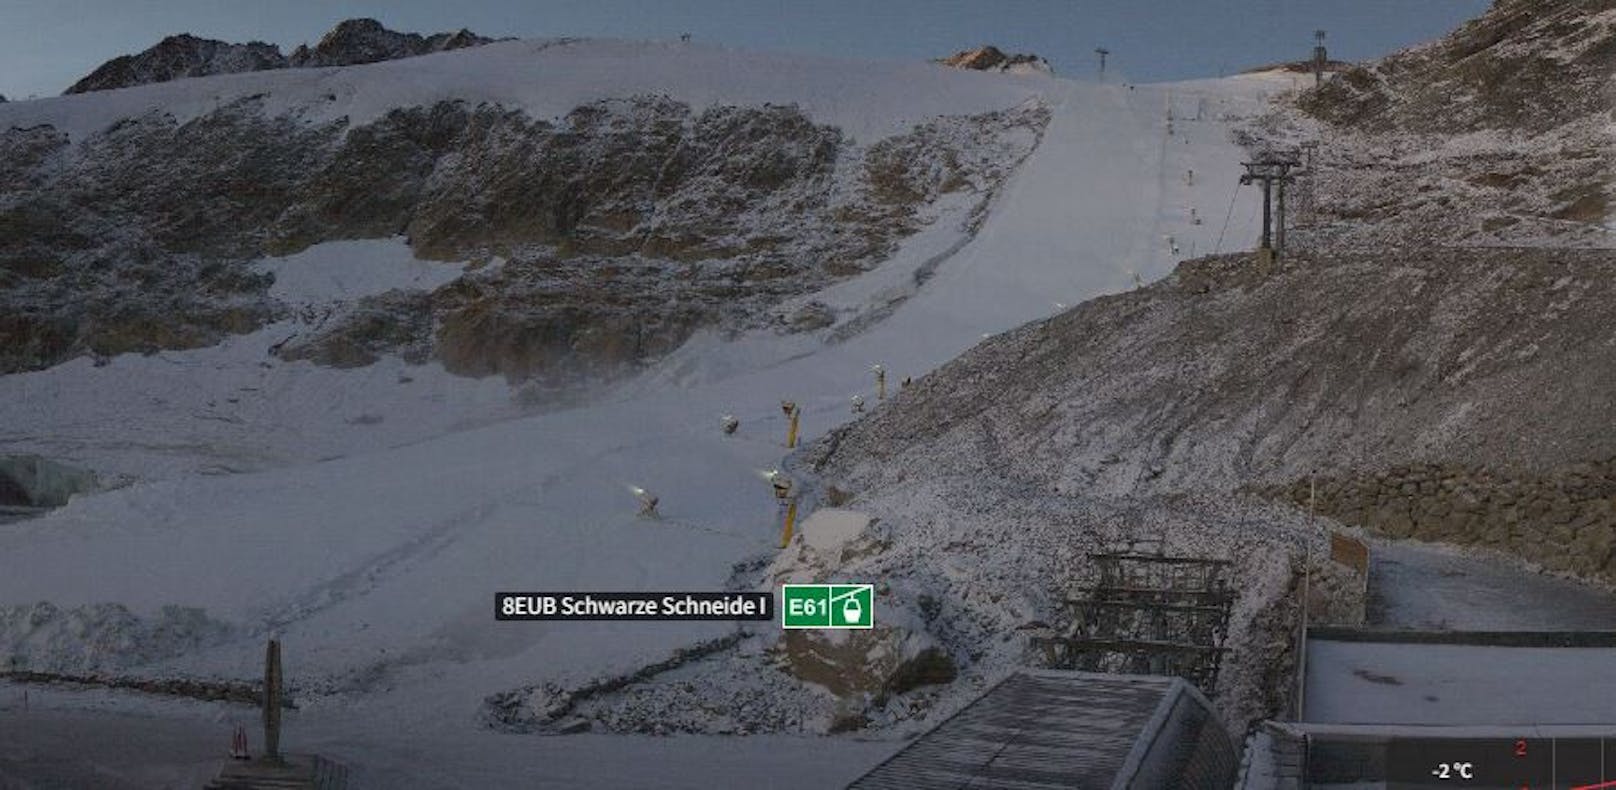 Weltcup-Piste am Gletscher ist jetzt endlich weiß